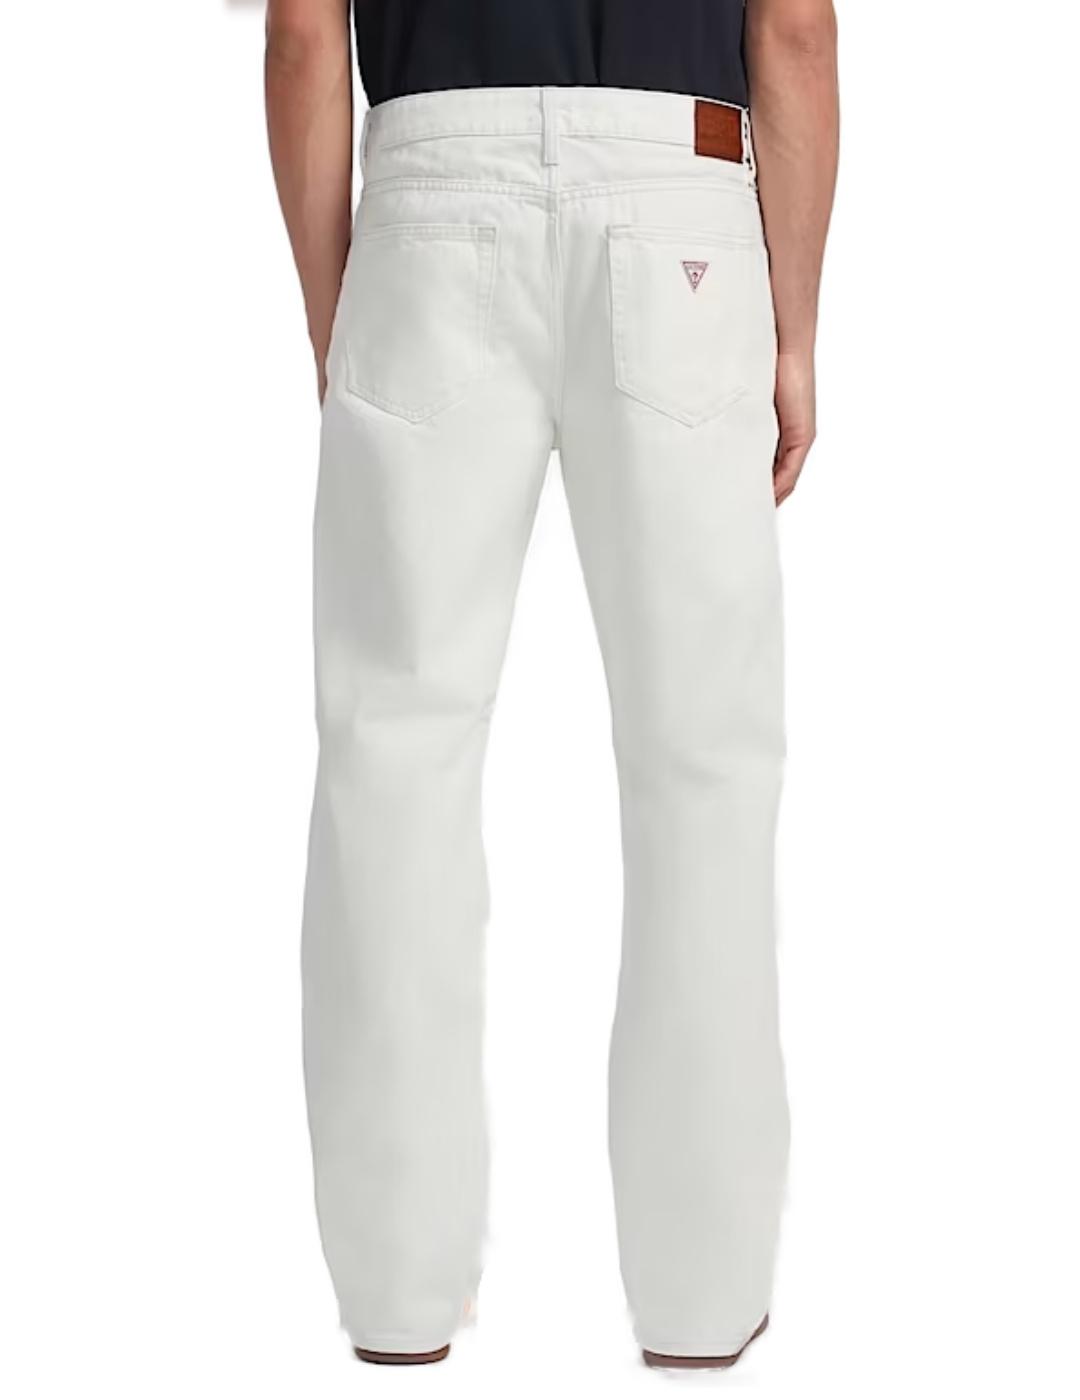 Pantalón vaquero Guess Jeans blanco regular para hombre